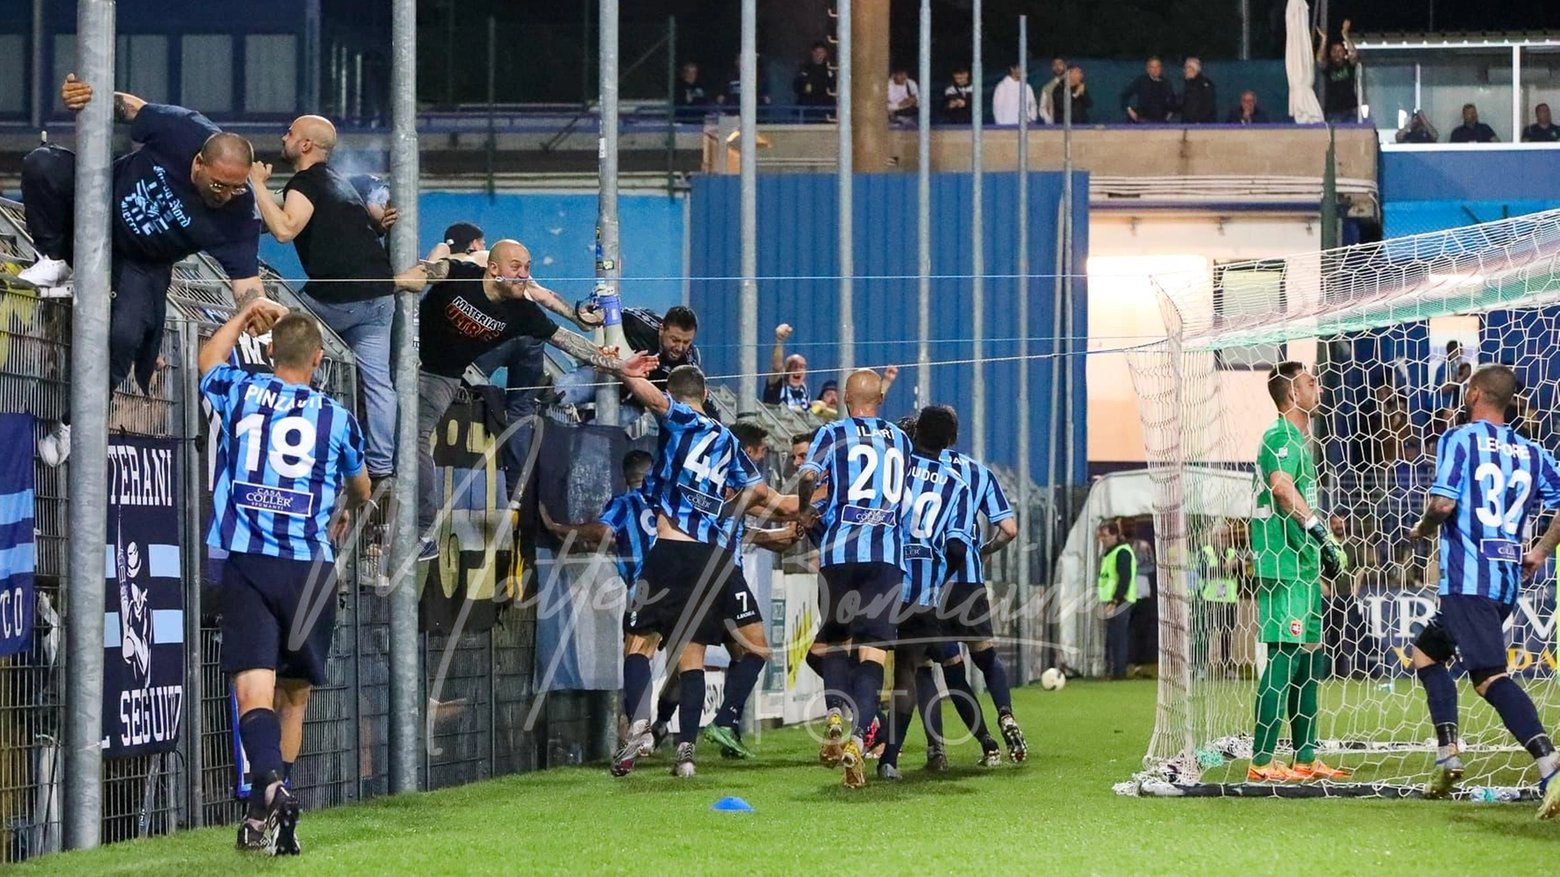 La squadra festeggia sotto la Nord dopo l'1-1 di Battistini nella gara di lunedì sera contro l'Ancona